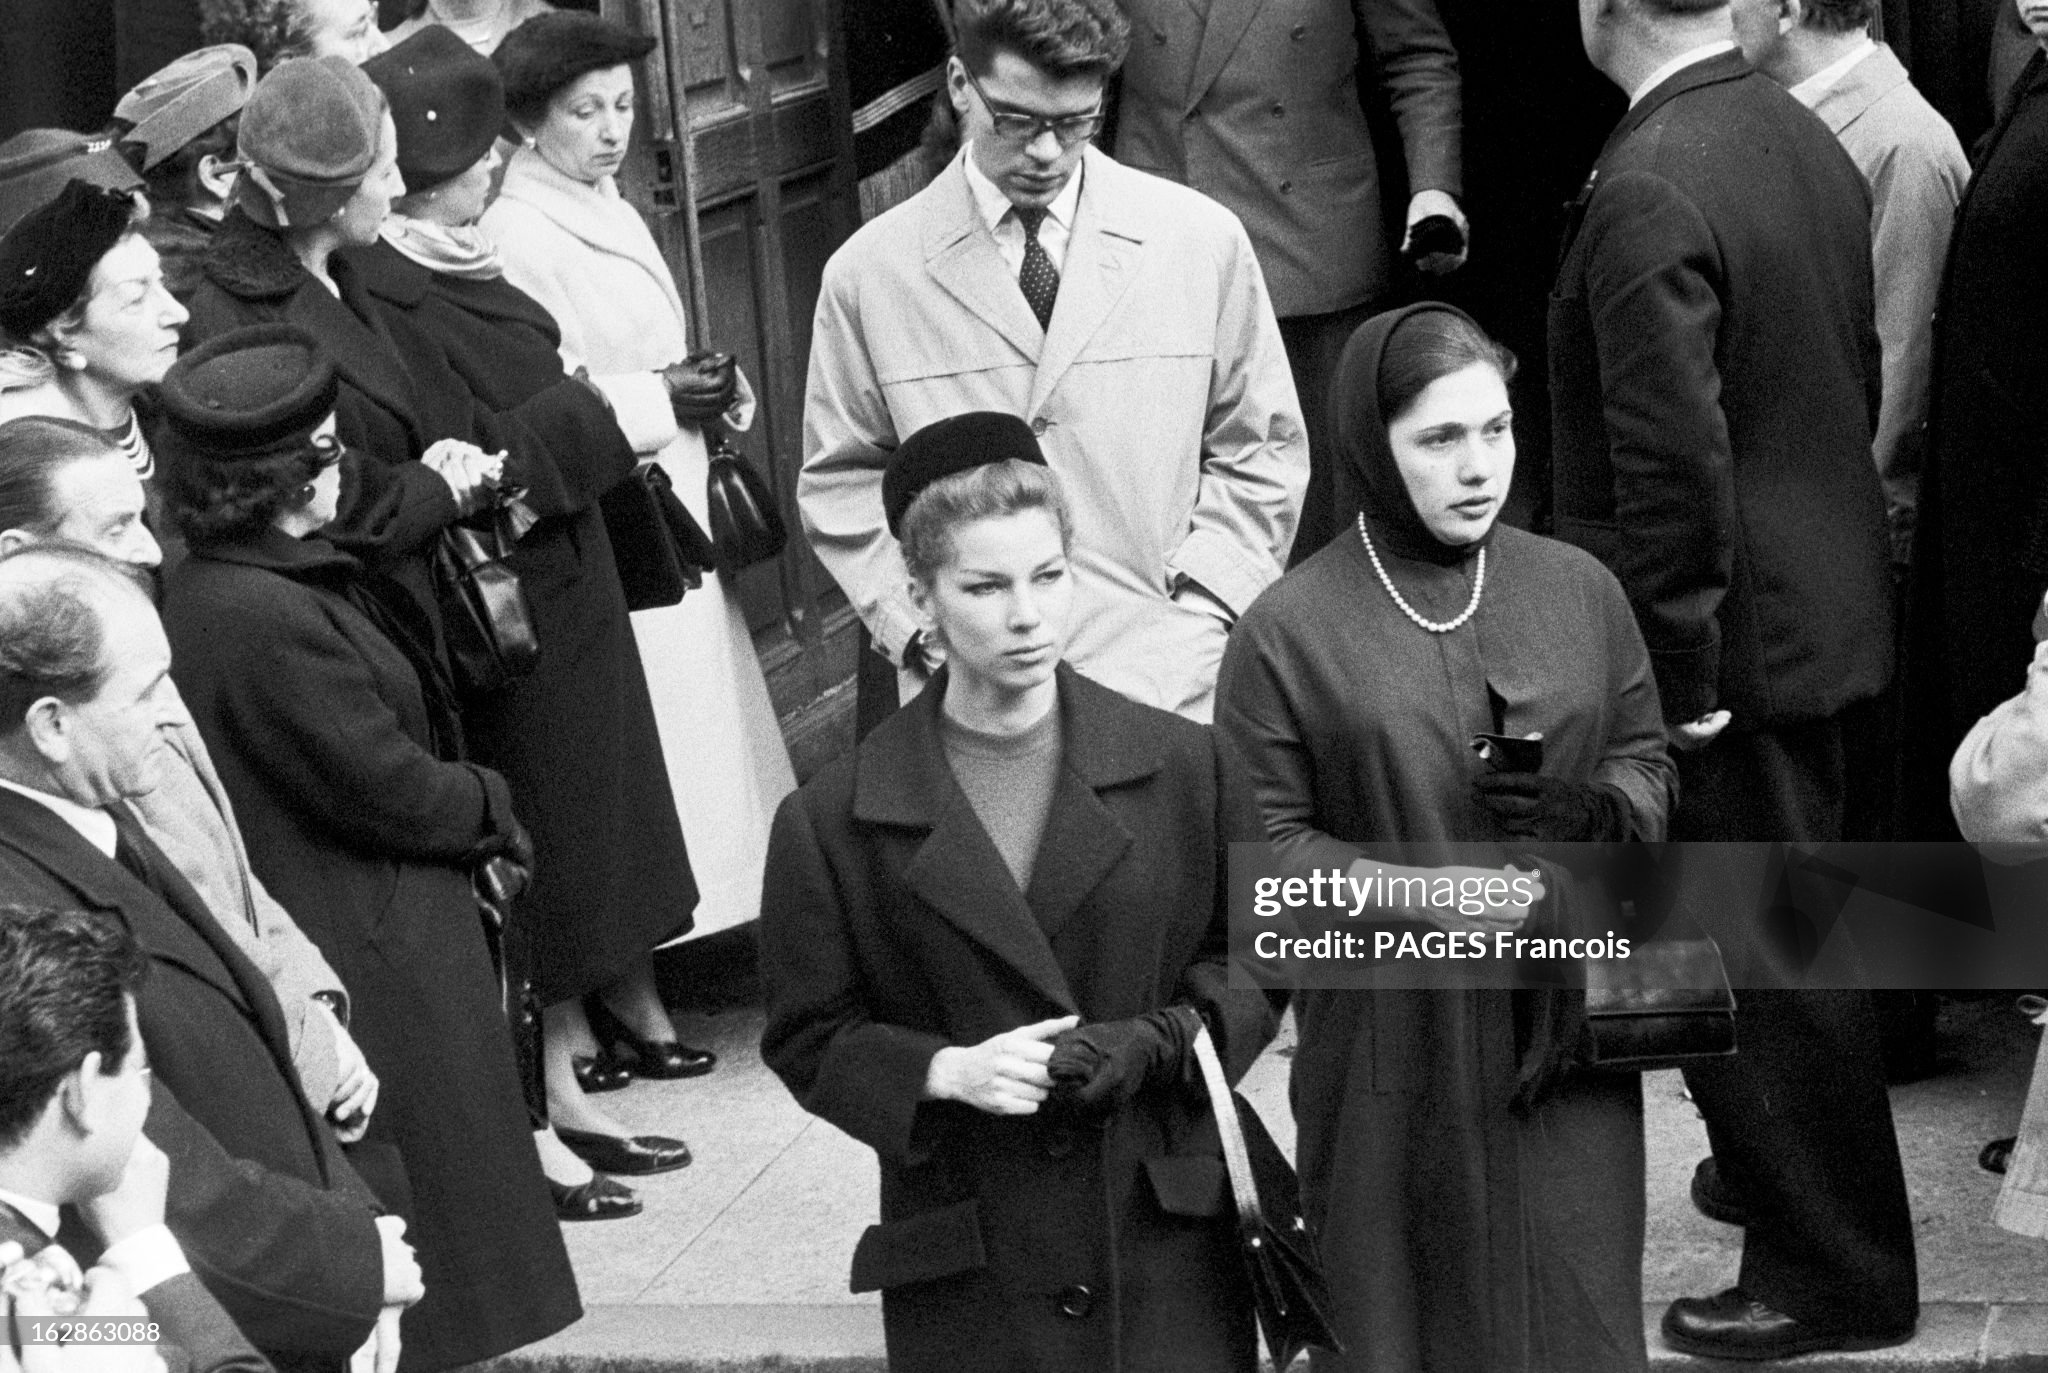 funeral-of-couturier-christian-dior-in-paris-paris-octobre-1957-les-obs%C3%A8ques-du-couturier.jpg